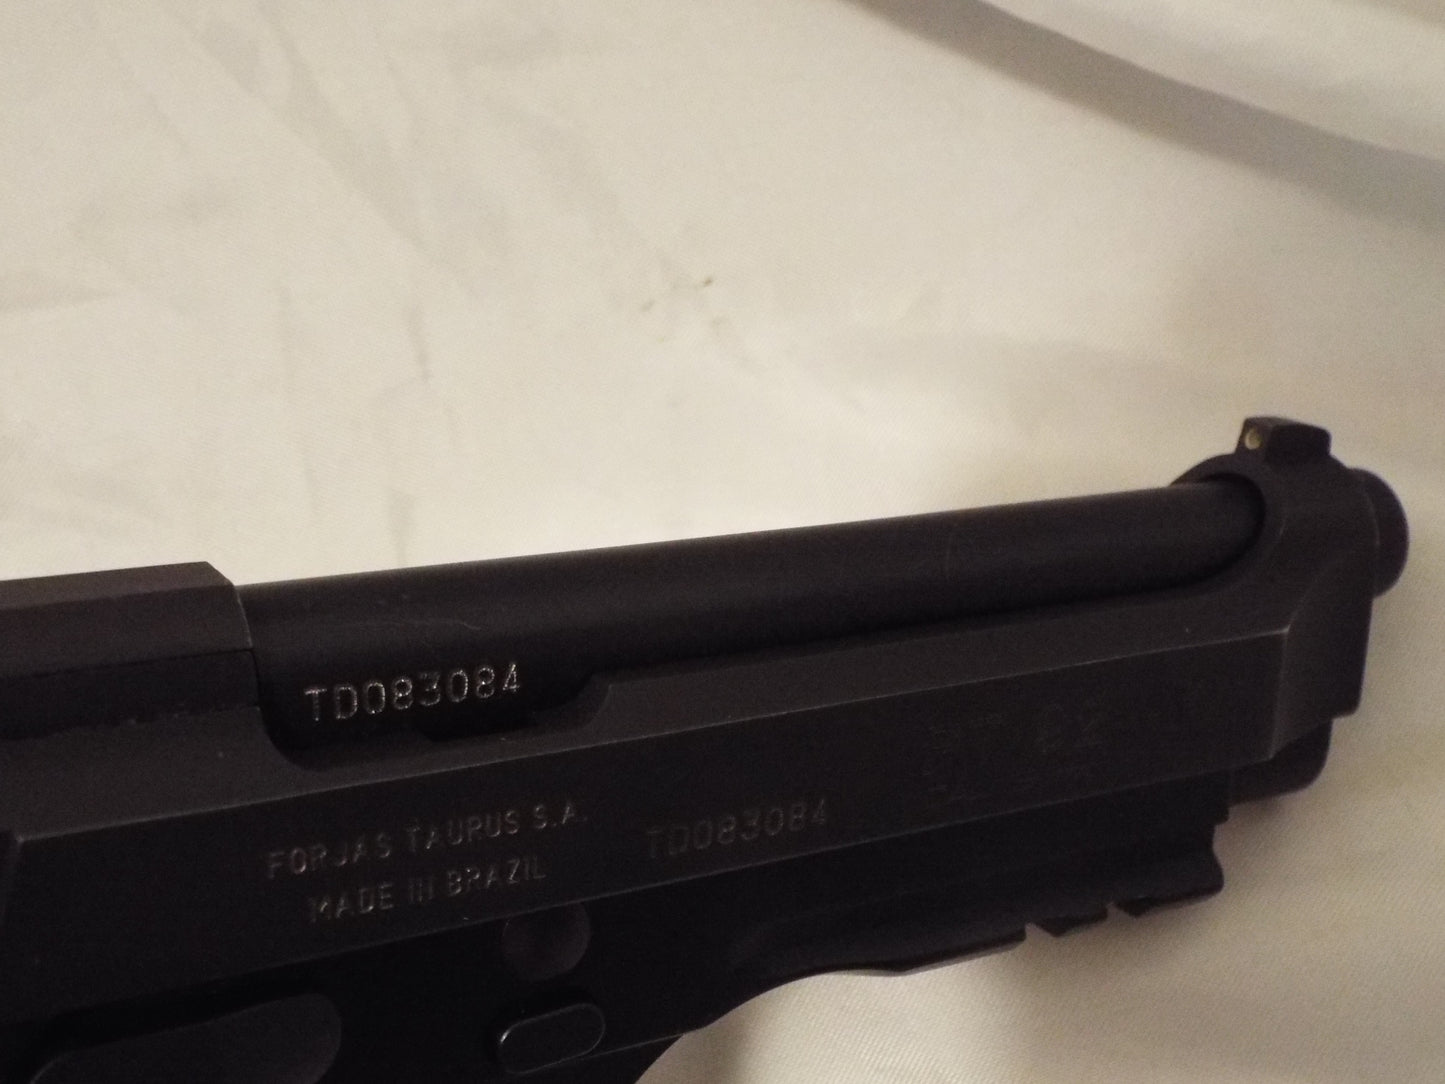 Taurus 92 Handgun 9mm Luger 18rd Magazine 5" Barrel Black Slide/Grip